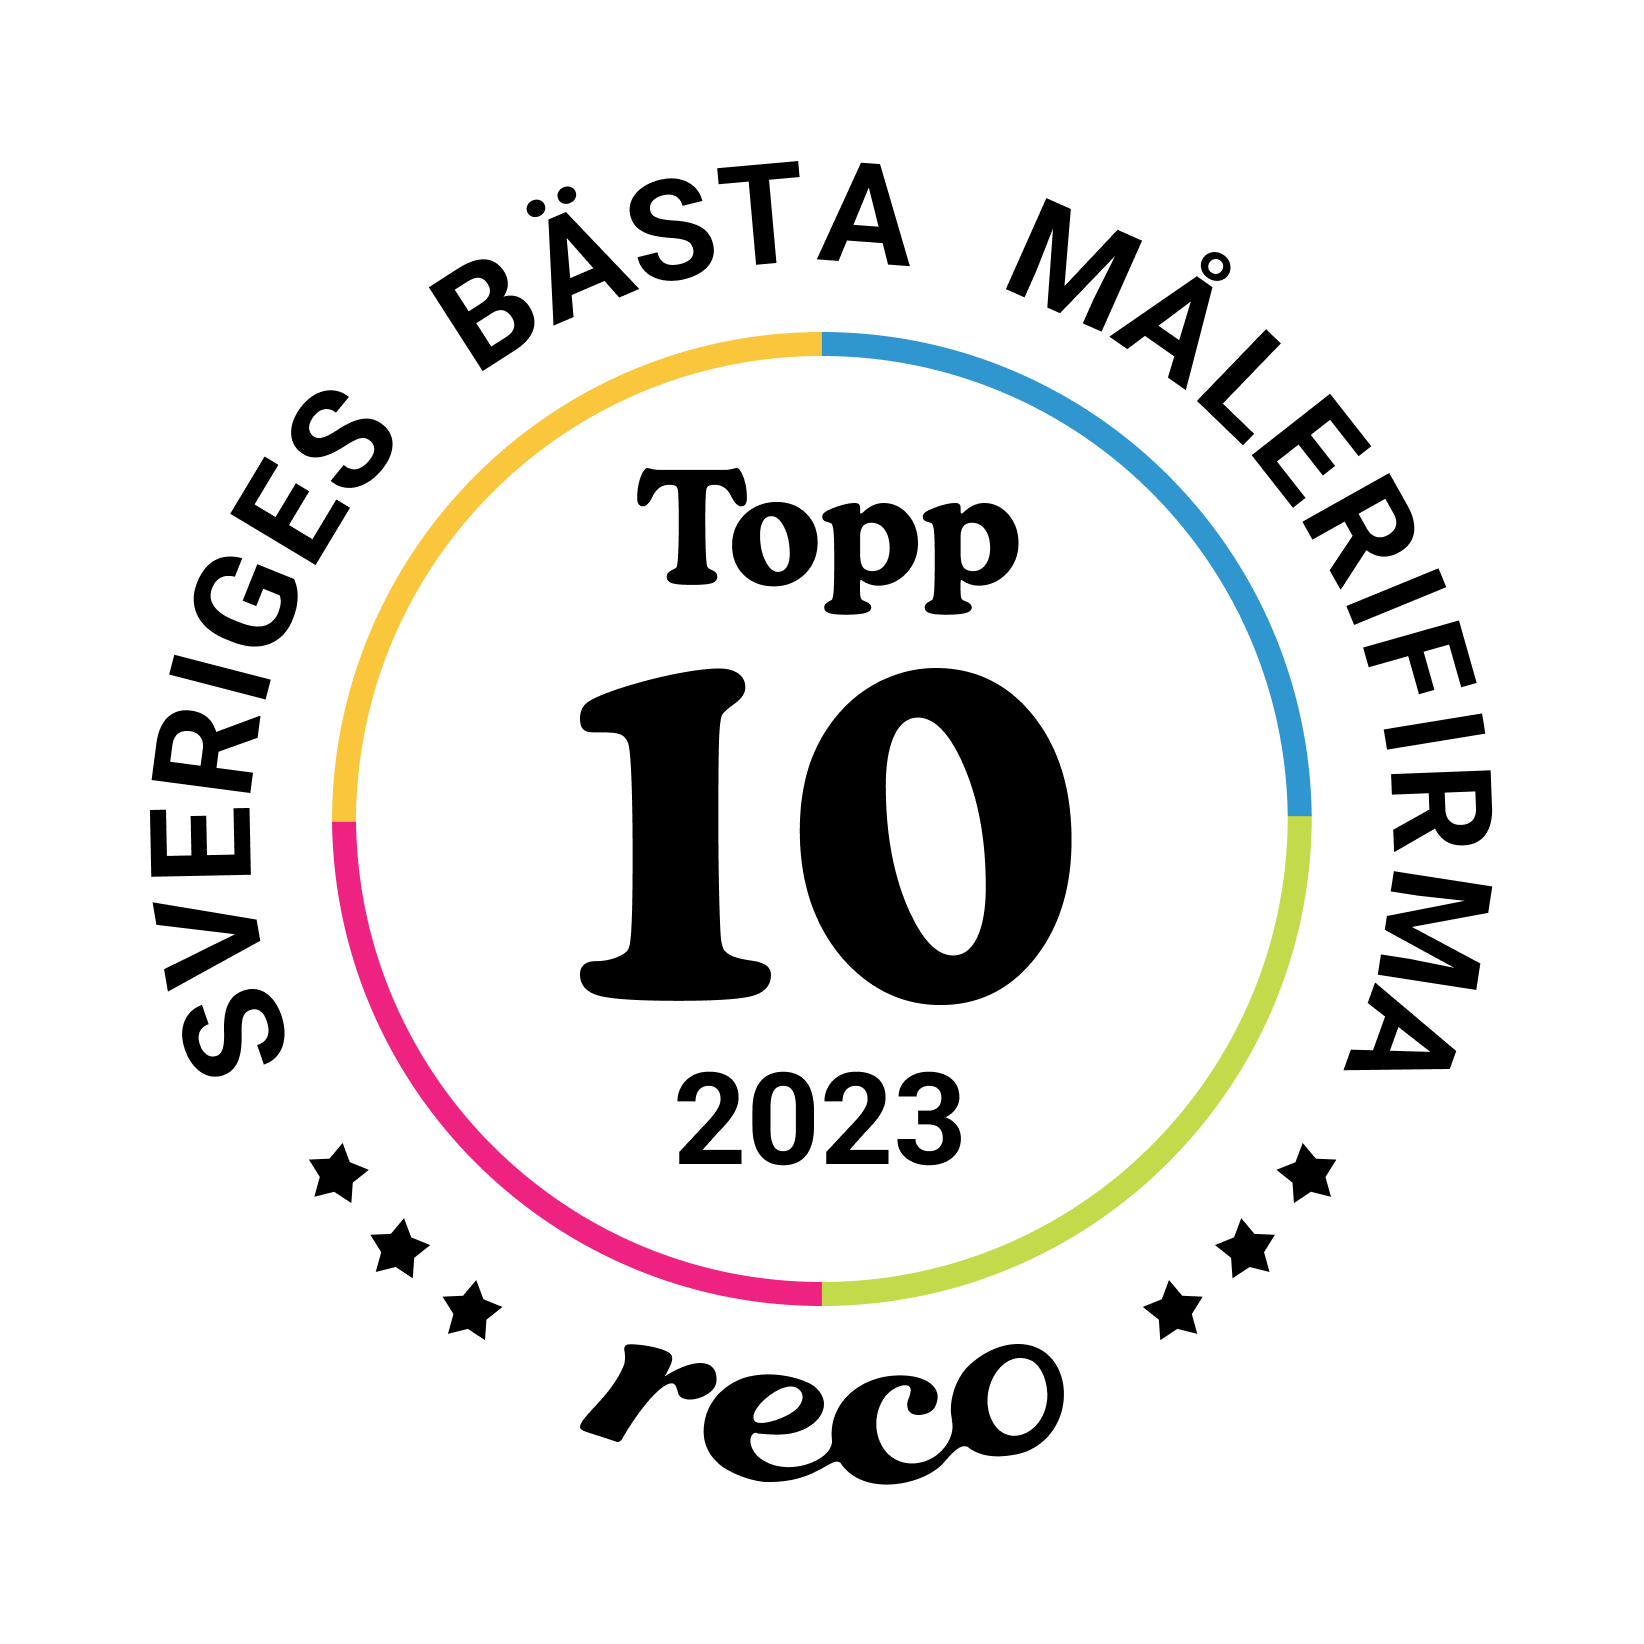 Bagde - Best in Sweden - Målerifirma - Top Ten@2x